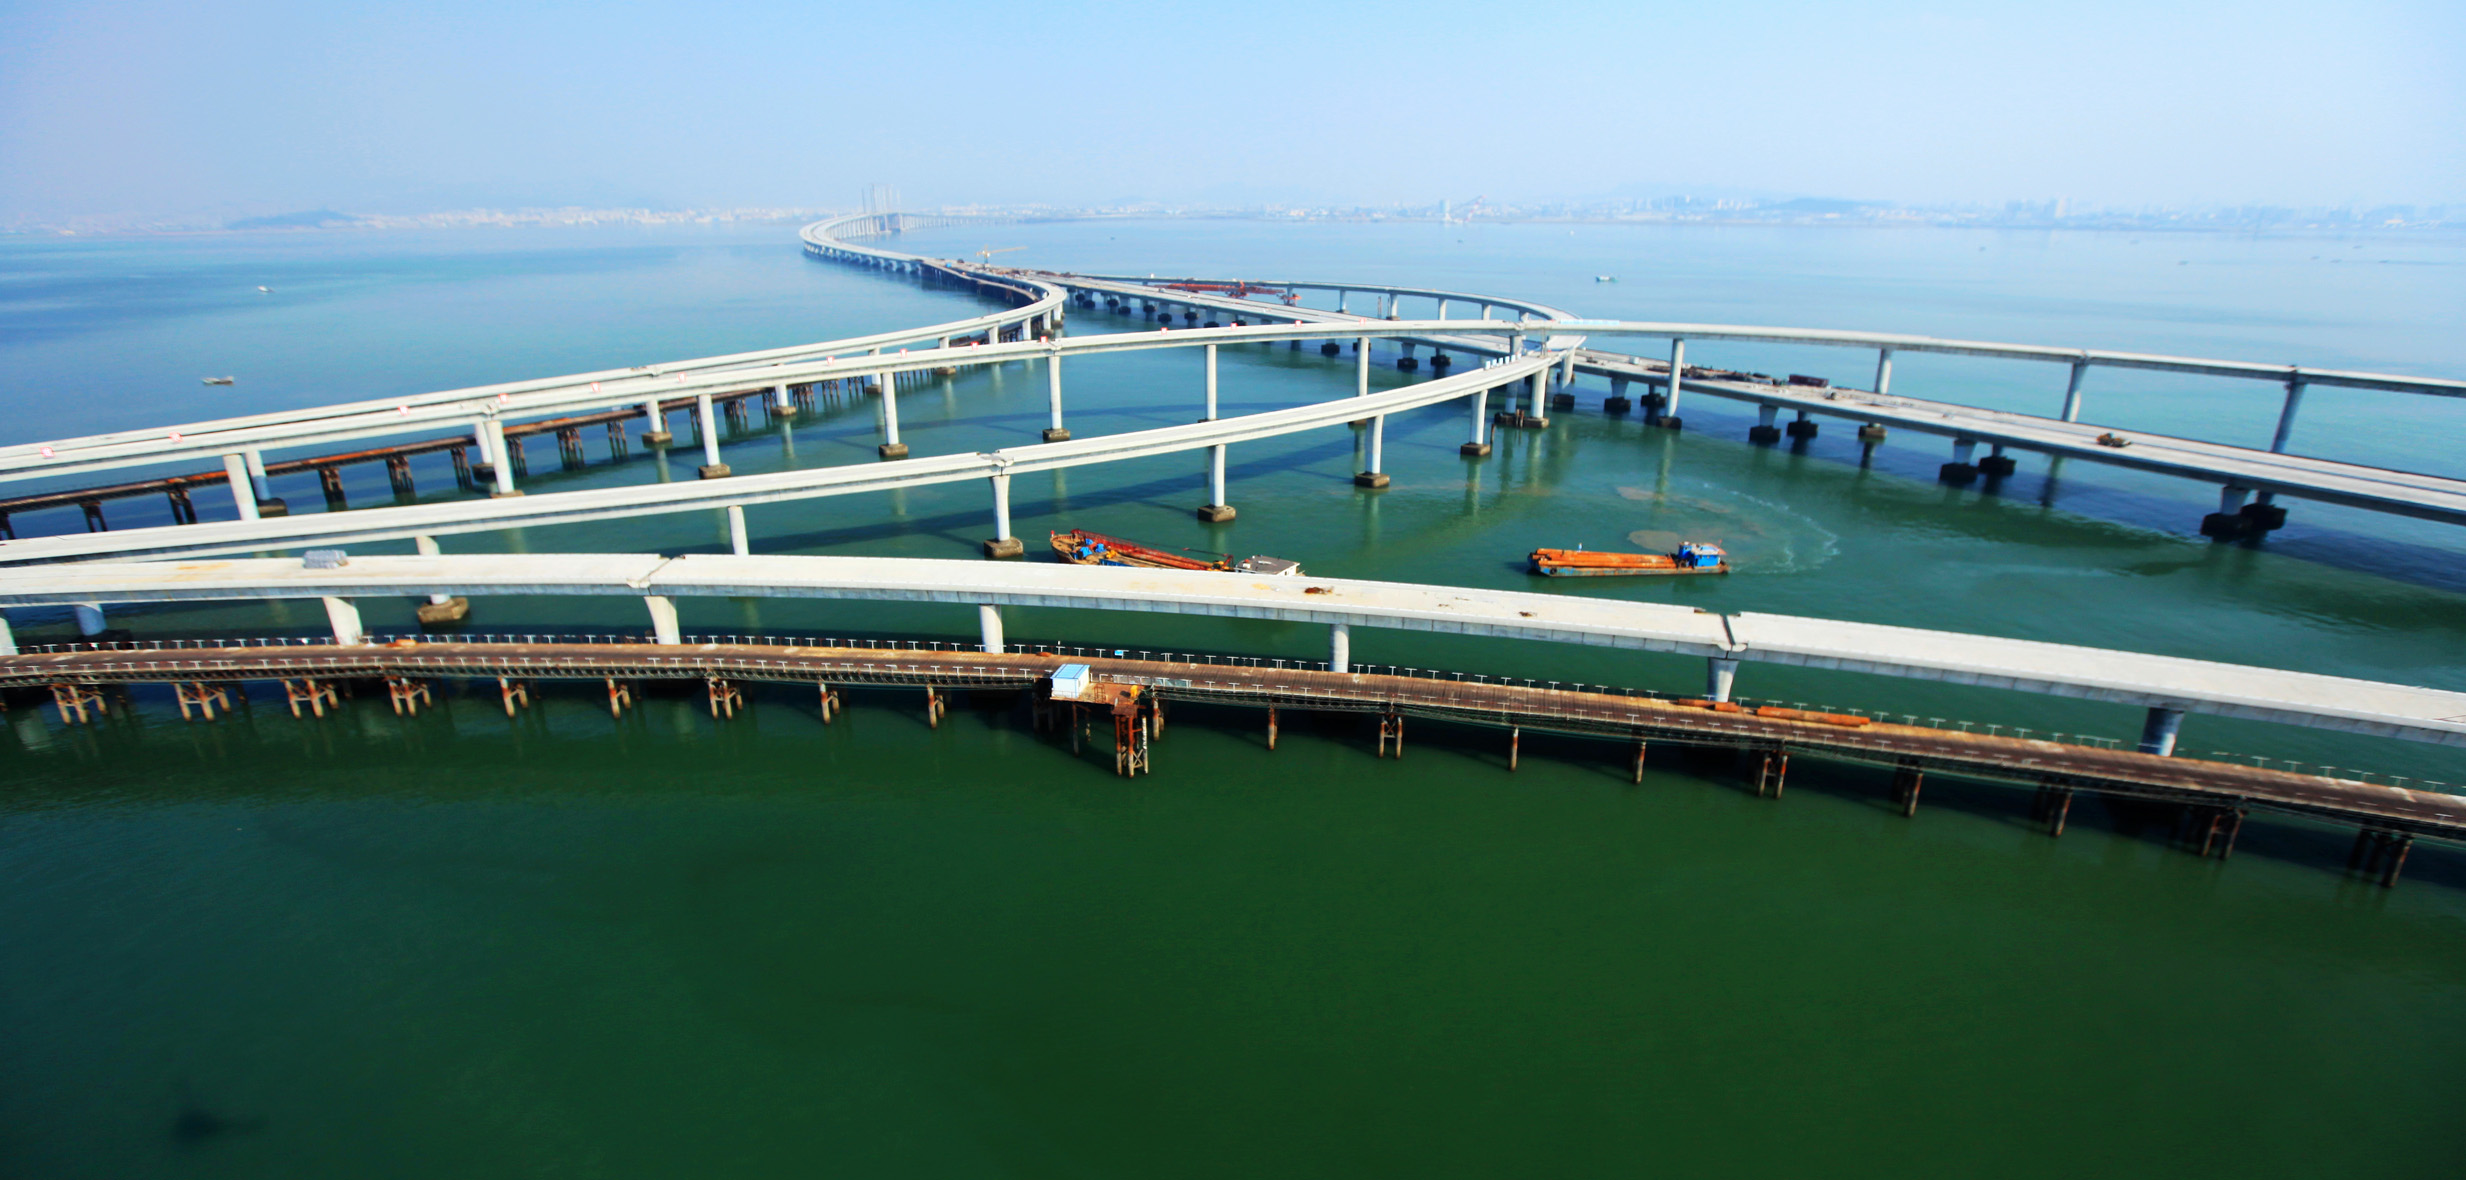 世界最长跨海大桥:胶州湾跨海大桥